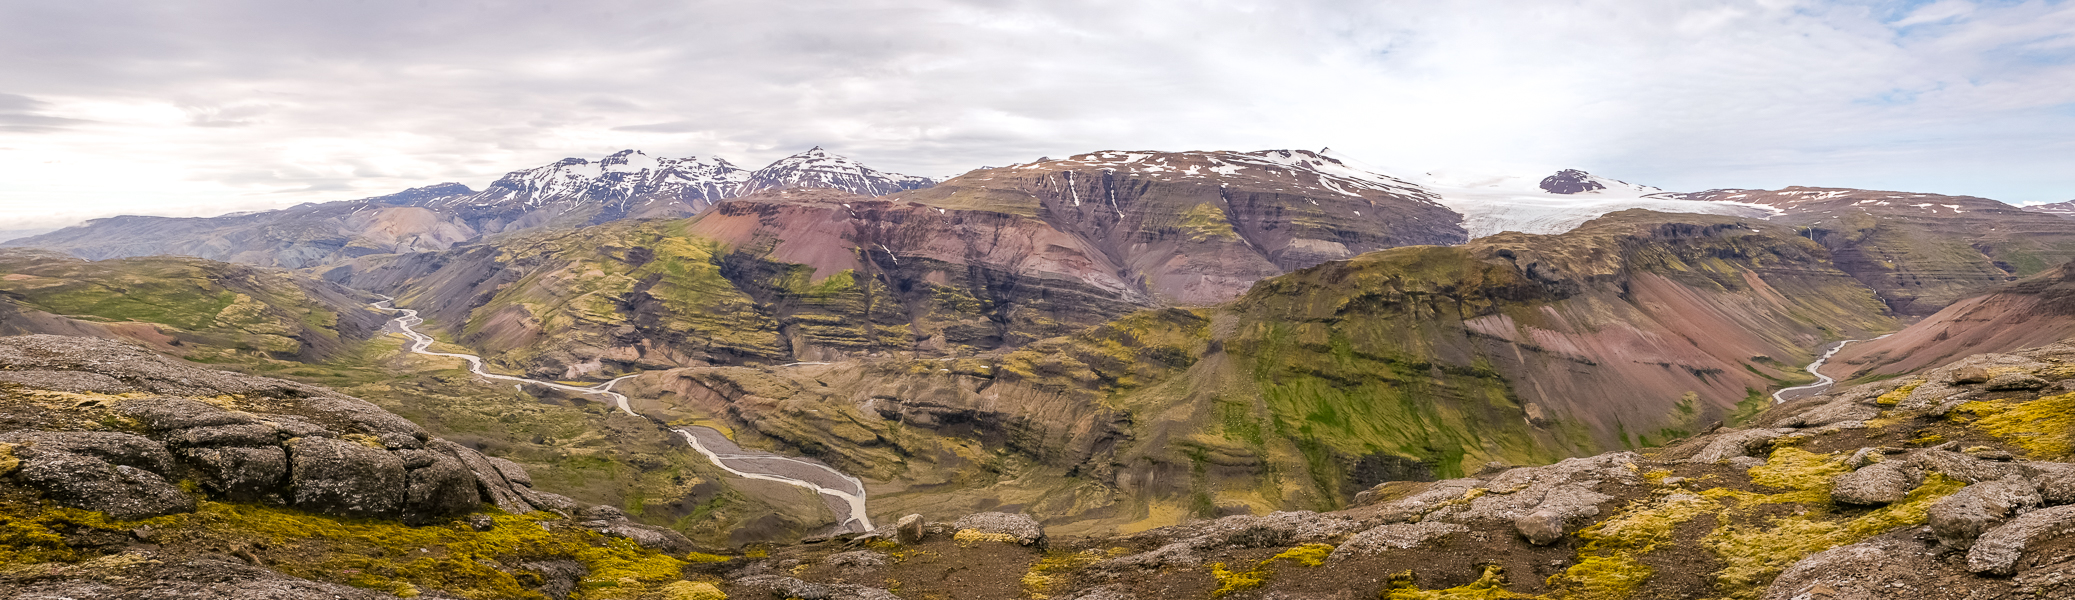 Panoramic view valley below Tröllakrókar - Day 3 of In the Shadow of Vatnajökull trek - East Iceland